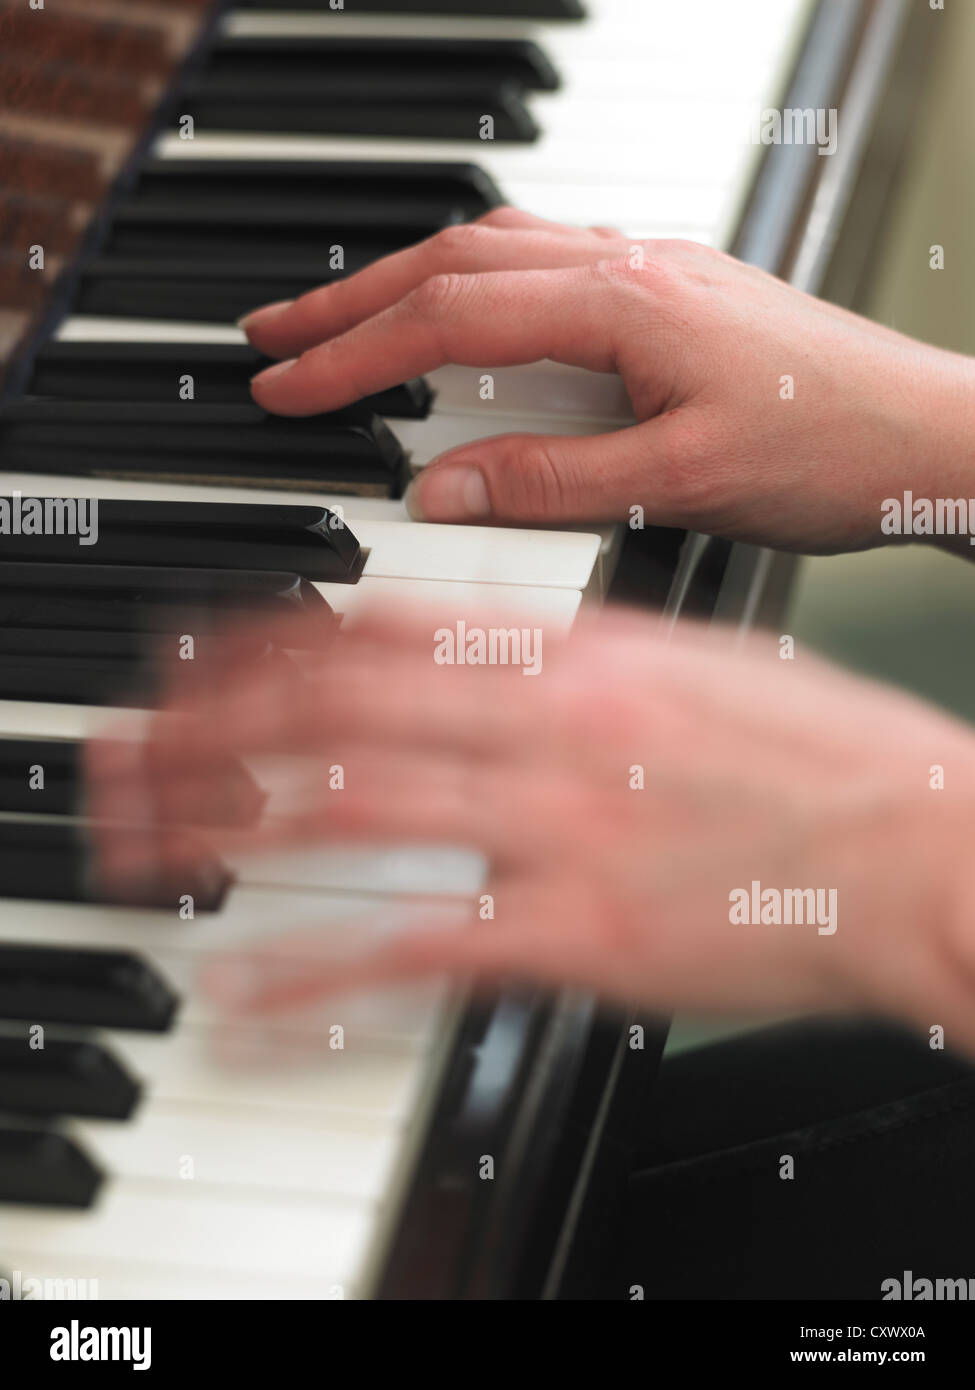 Les mains des femmes au mouvement jouant du piano keyboard Photo Stock -  Alamy